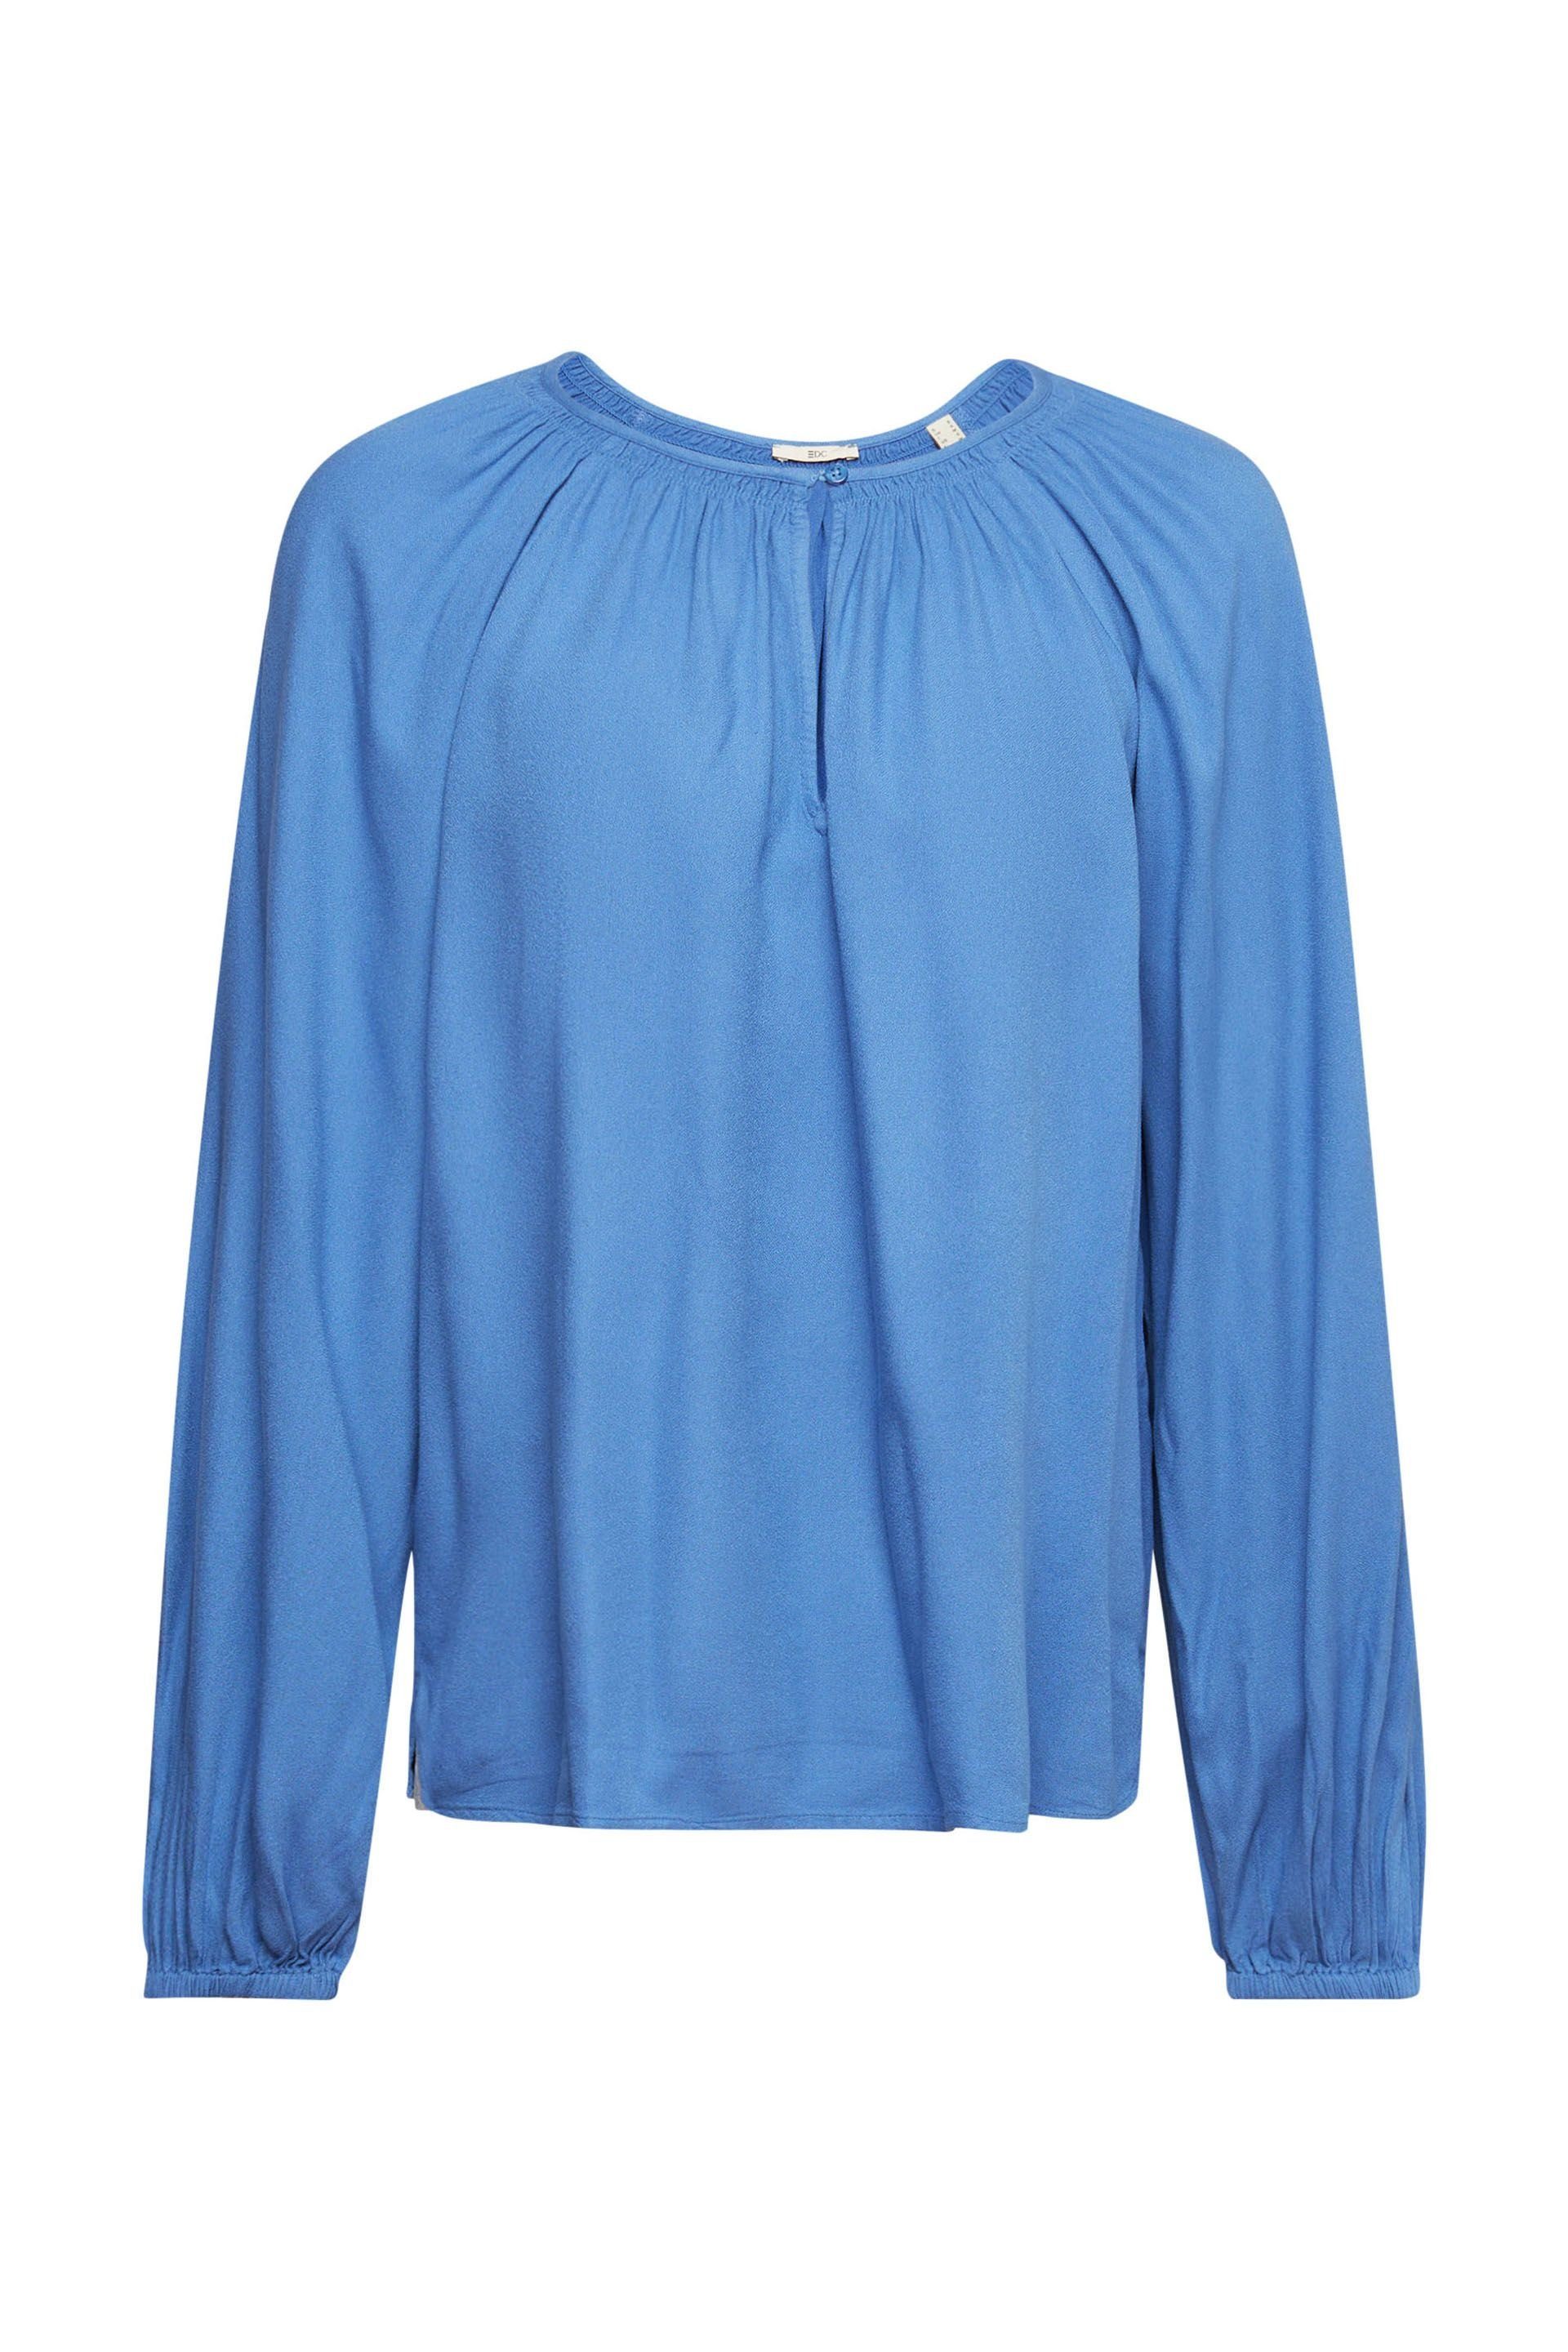 Versandhandelsseite Esprit Klassische Bluse blue